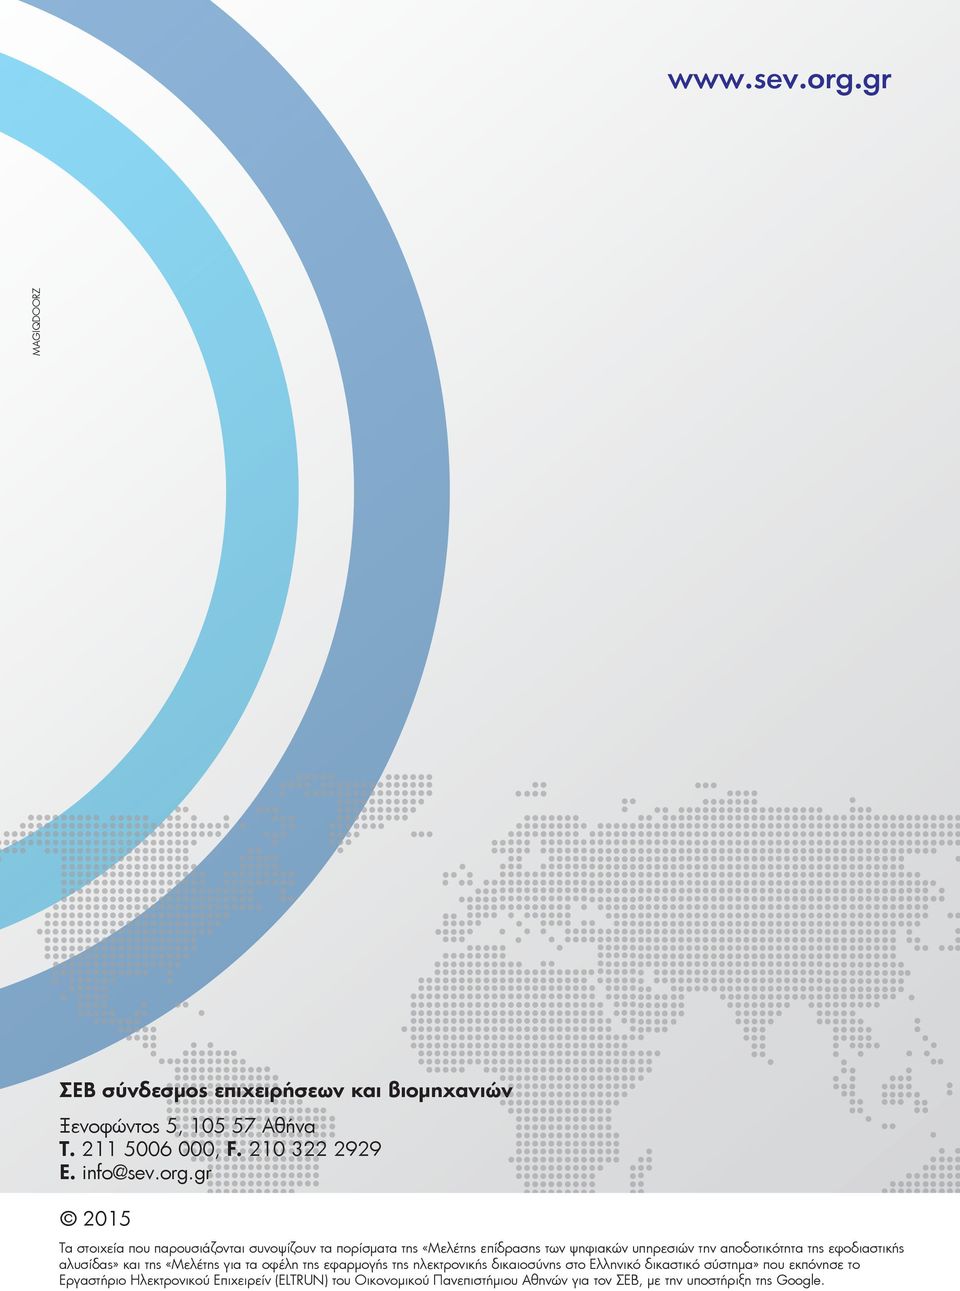 gr 2015 Τα στοιχεία που παρουσιάζονται συνοψίζουν τα πορίσµατα της «Μελέτης επίδρασης των ψηφιακών υπηρεσιών την αποδοτικότητα της